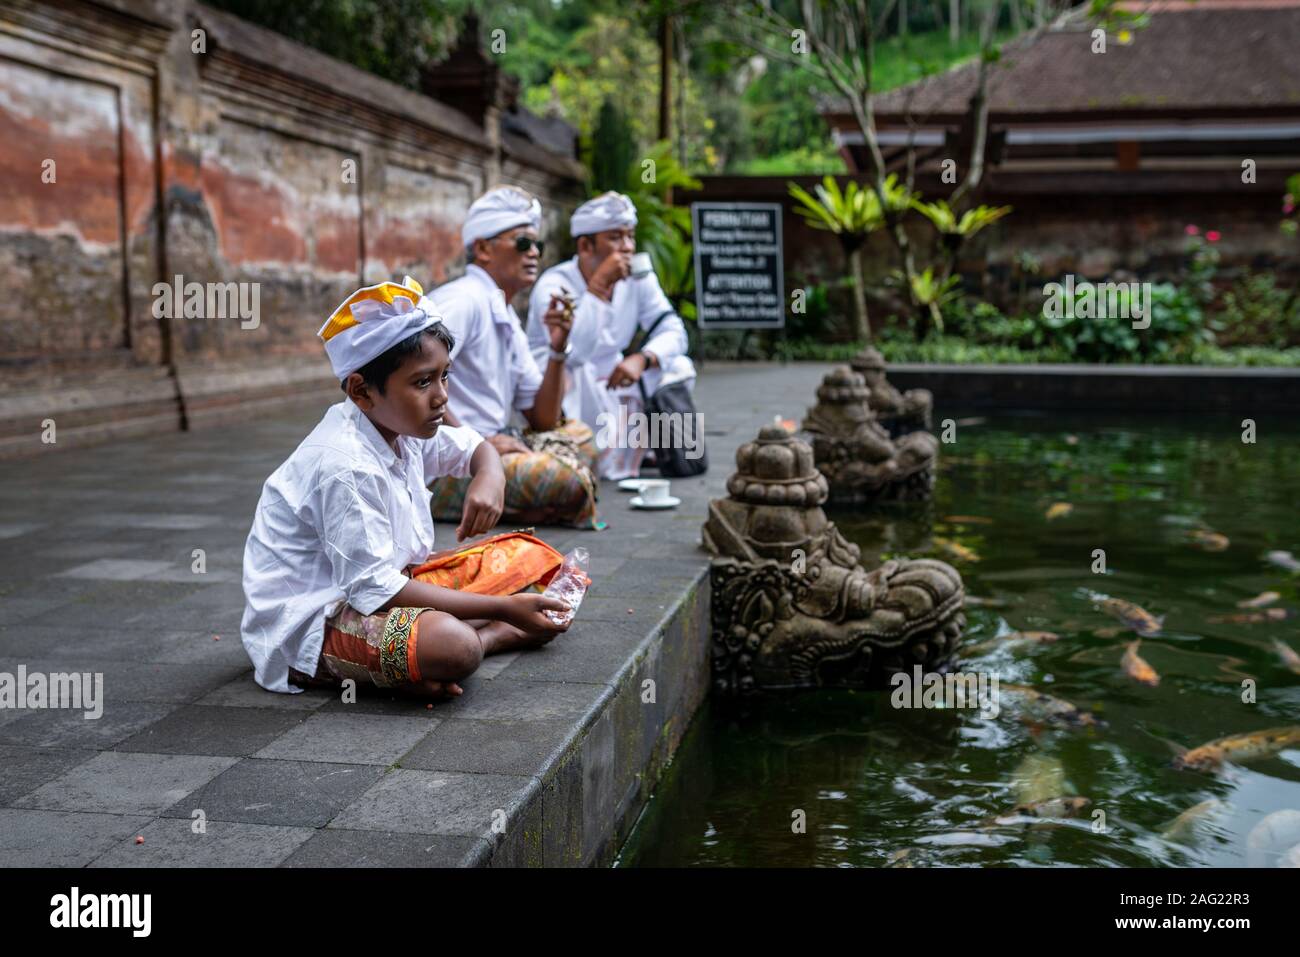 Bali, Indonesien, September 4, 2017: jungen Jungen und ihre Väter tragen traditionelle Kostüme, Tirta Empul Tempel. An einem bewölkten Nachmittag genommen. Stockfoto